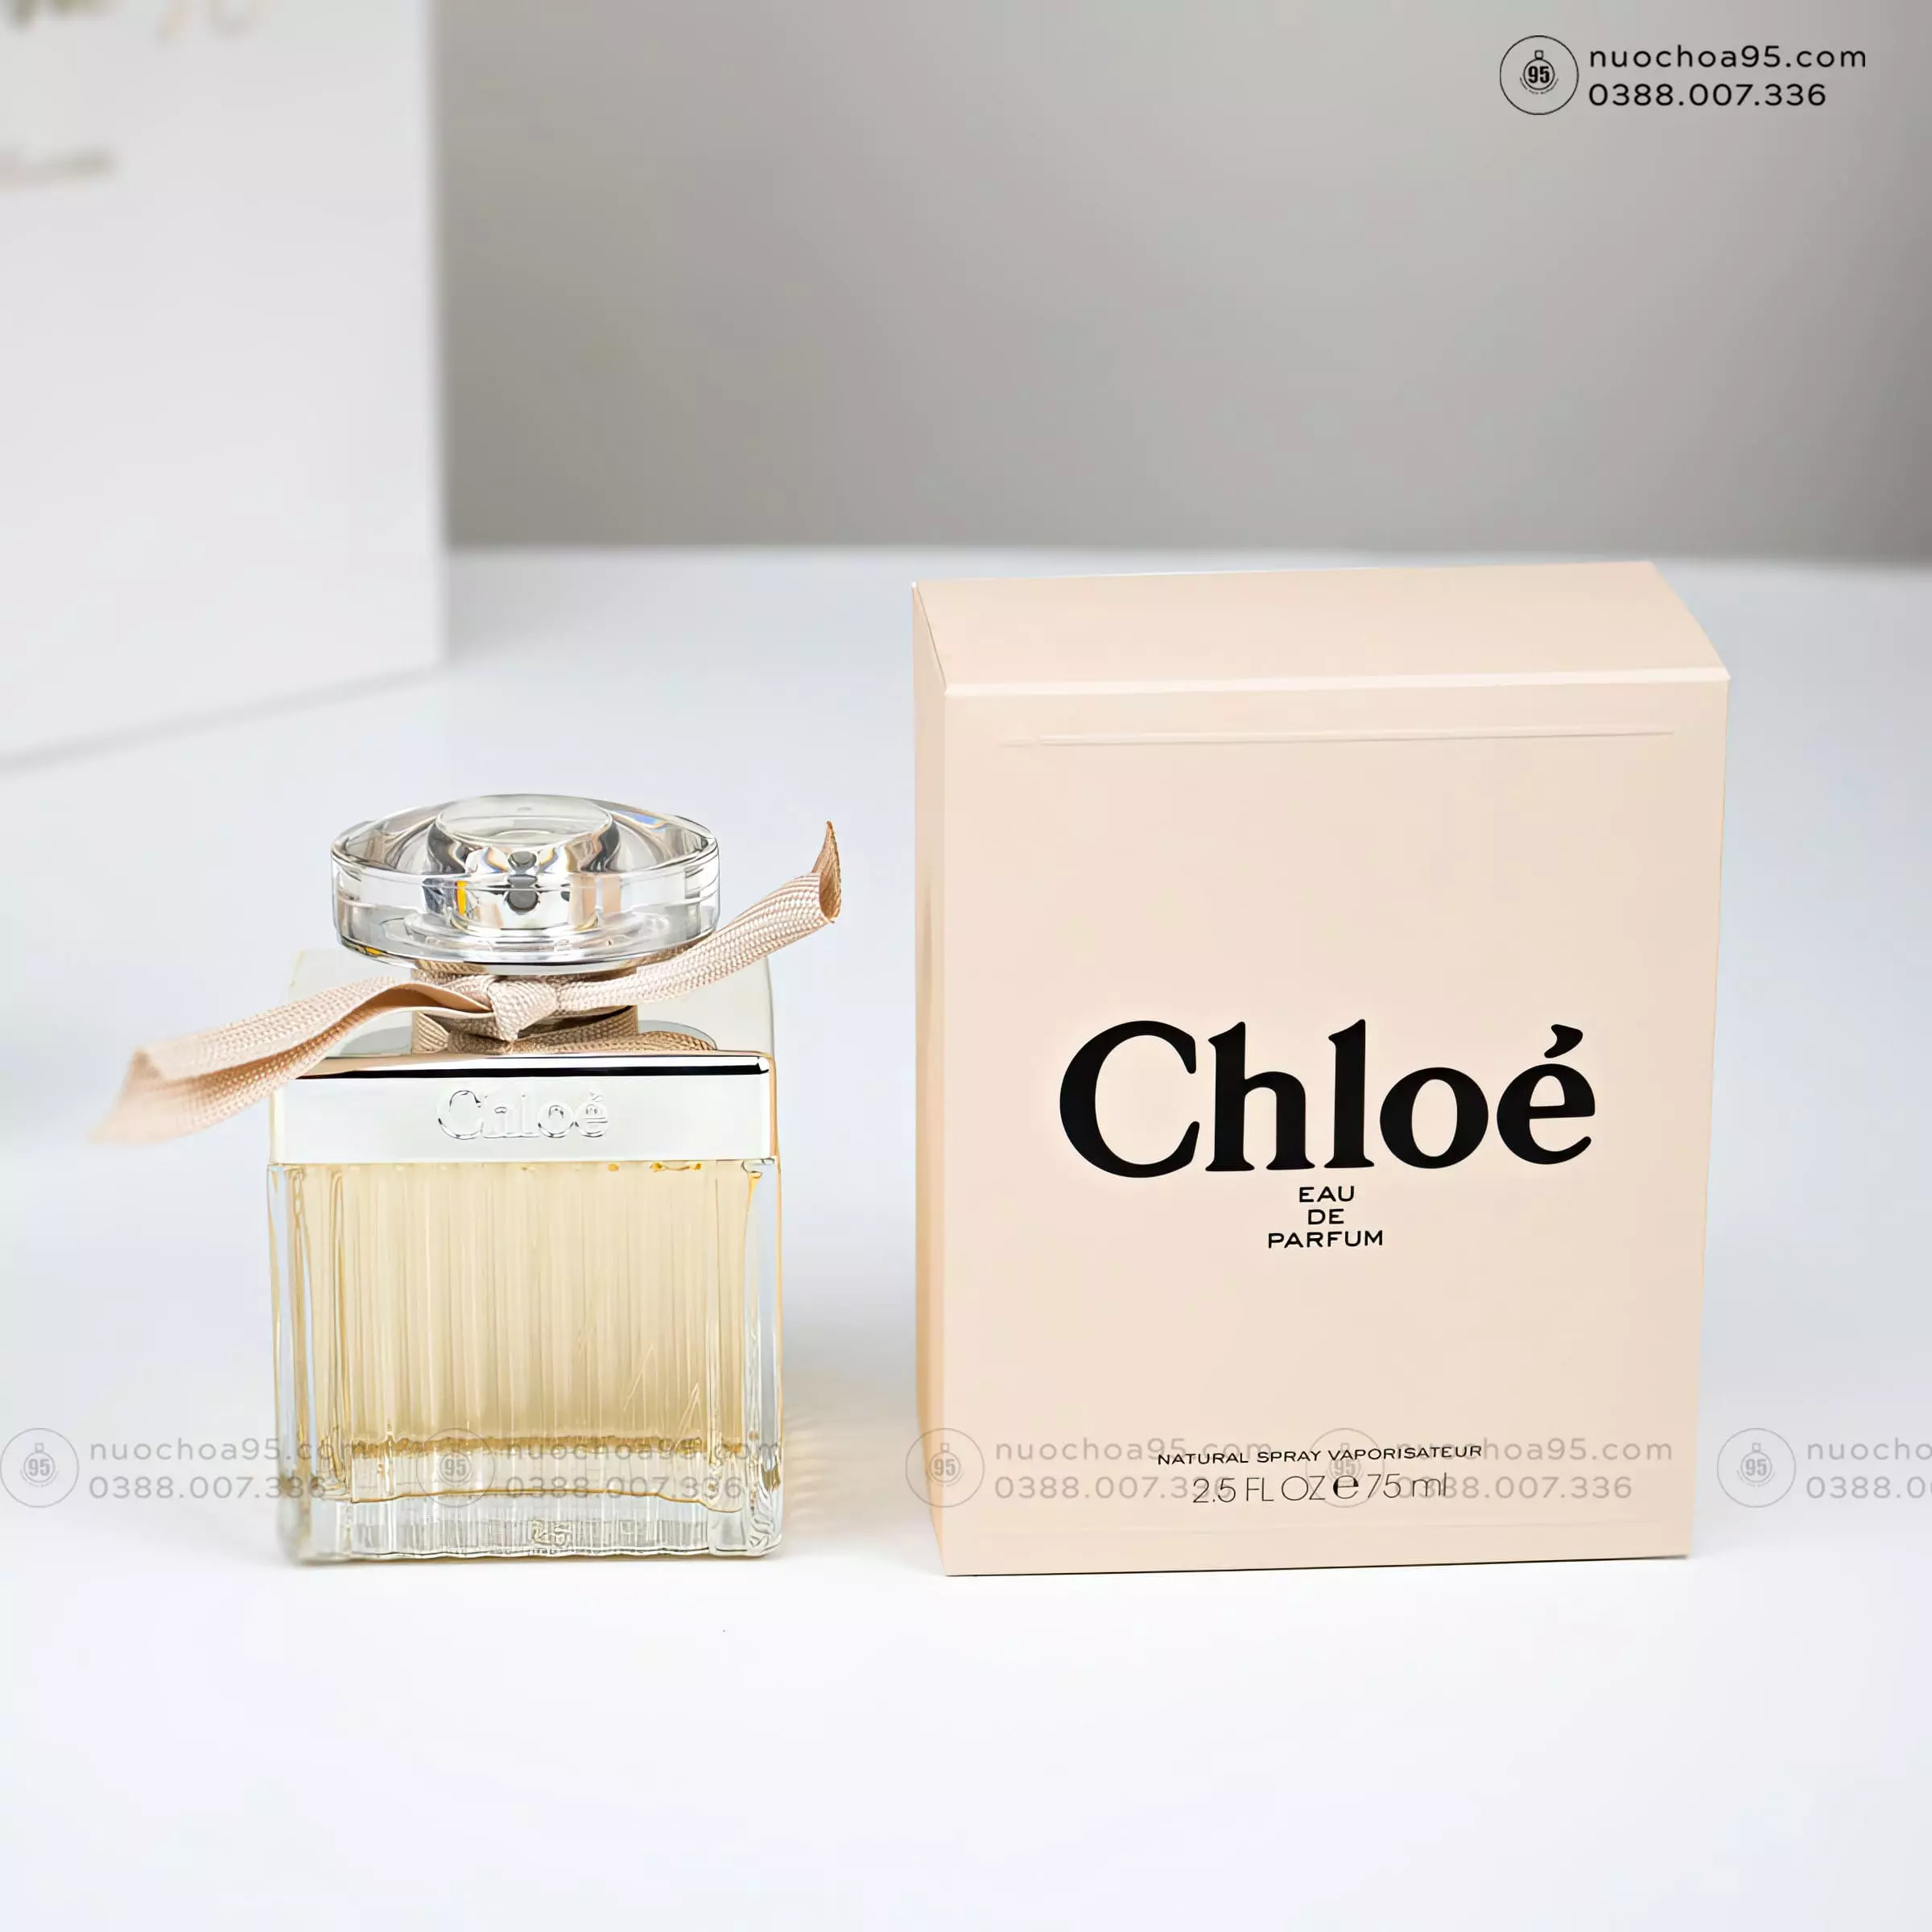 Nước hoa Chloé Eau de Parfum  - Ảnh 4